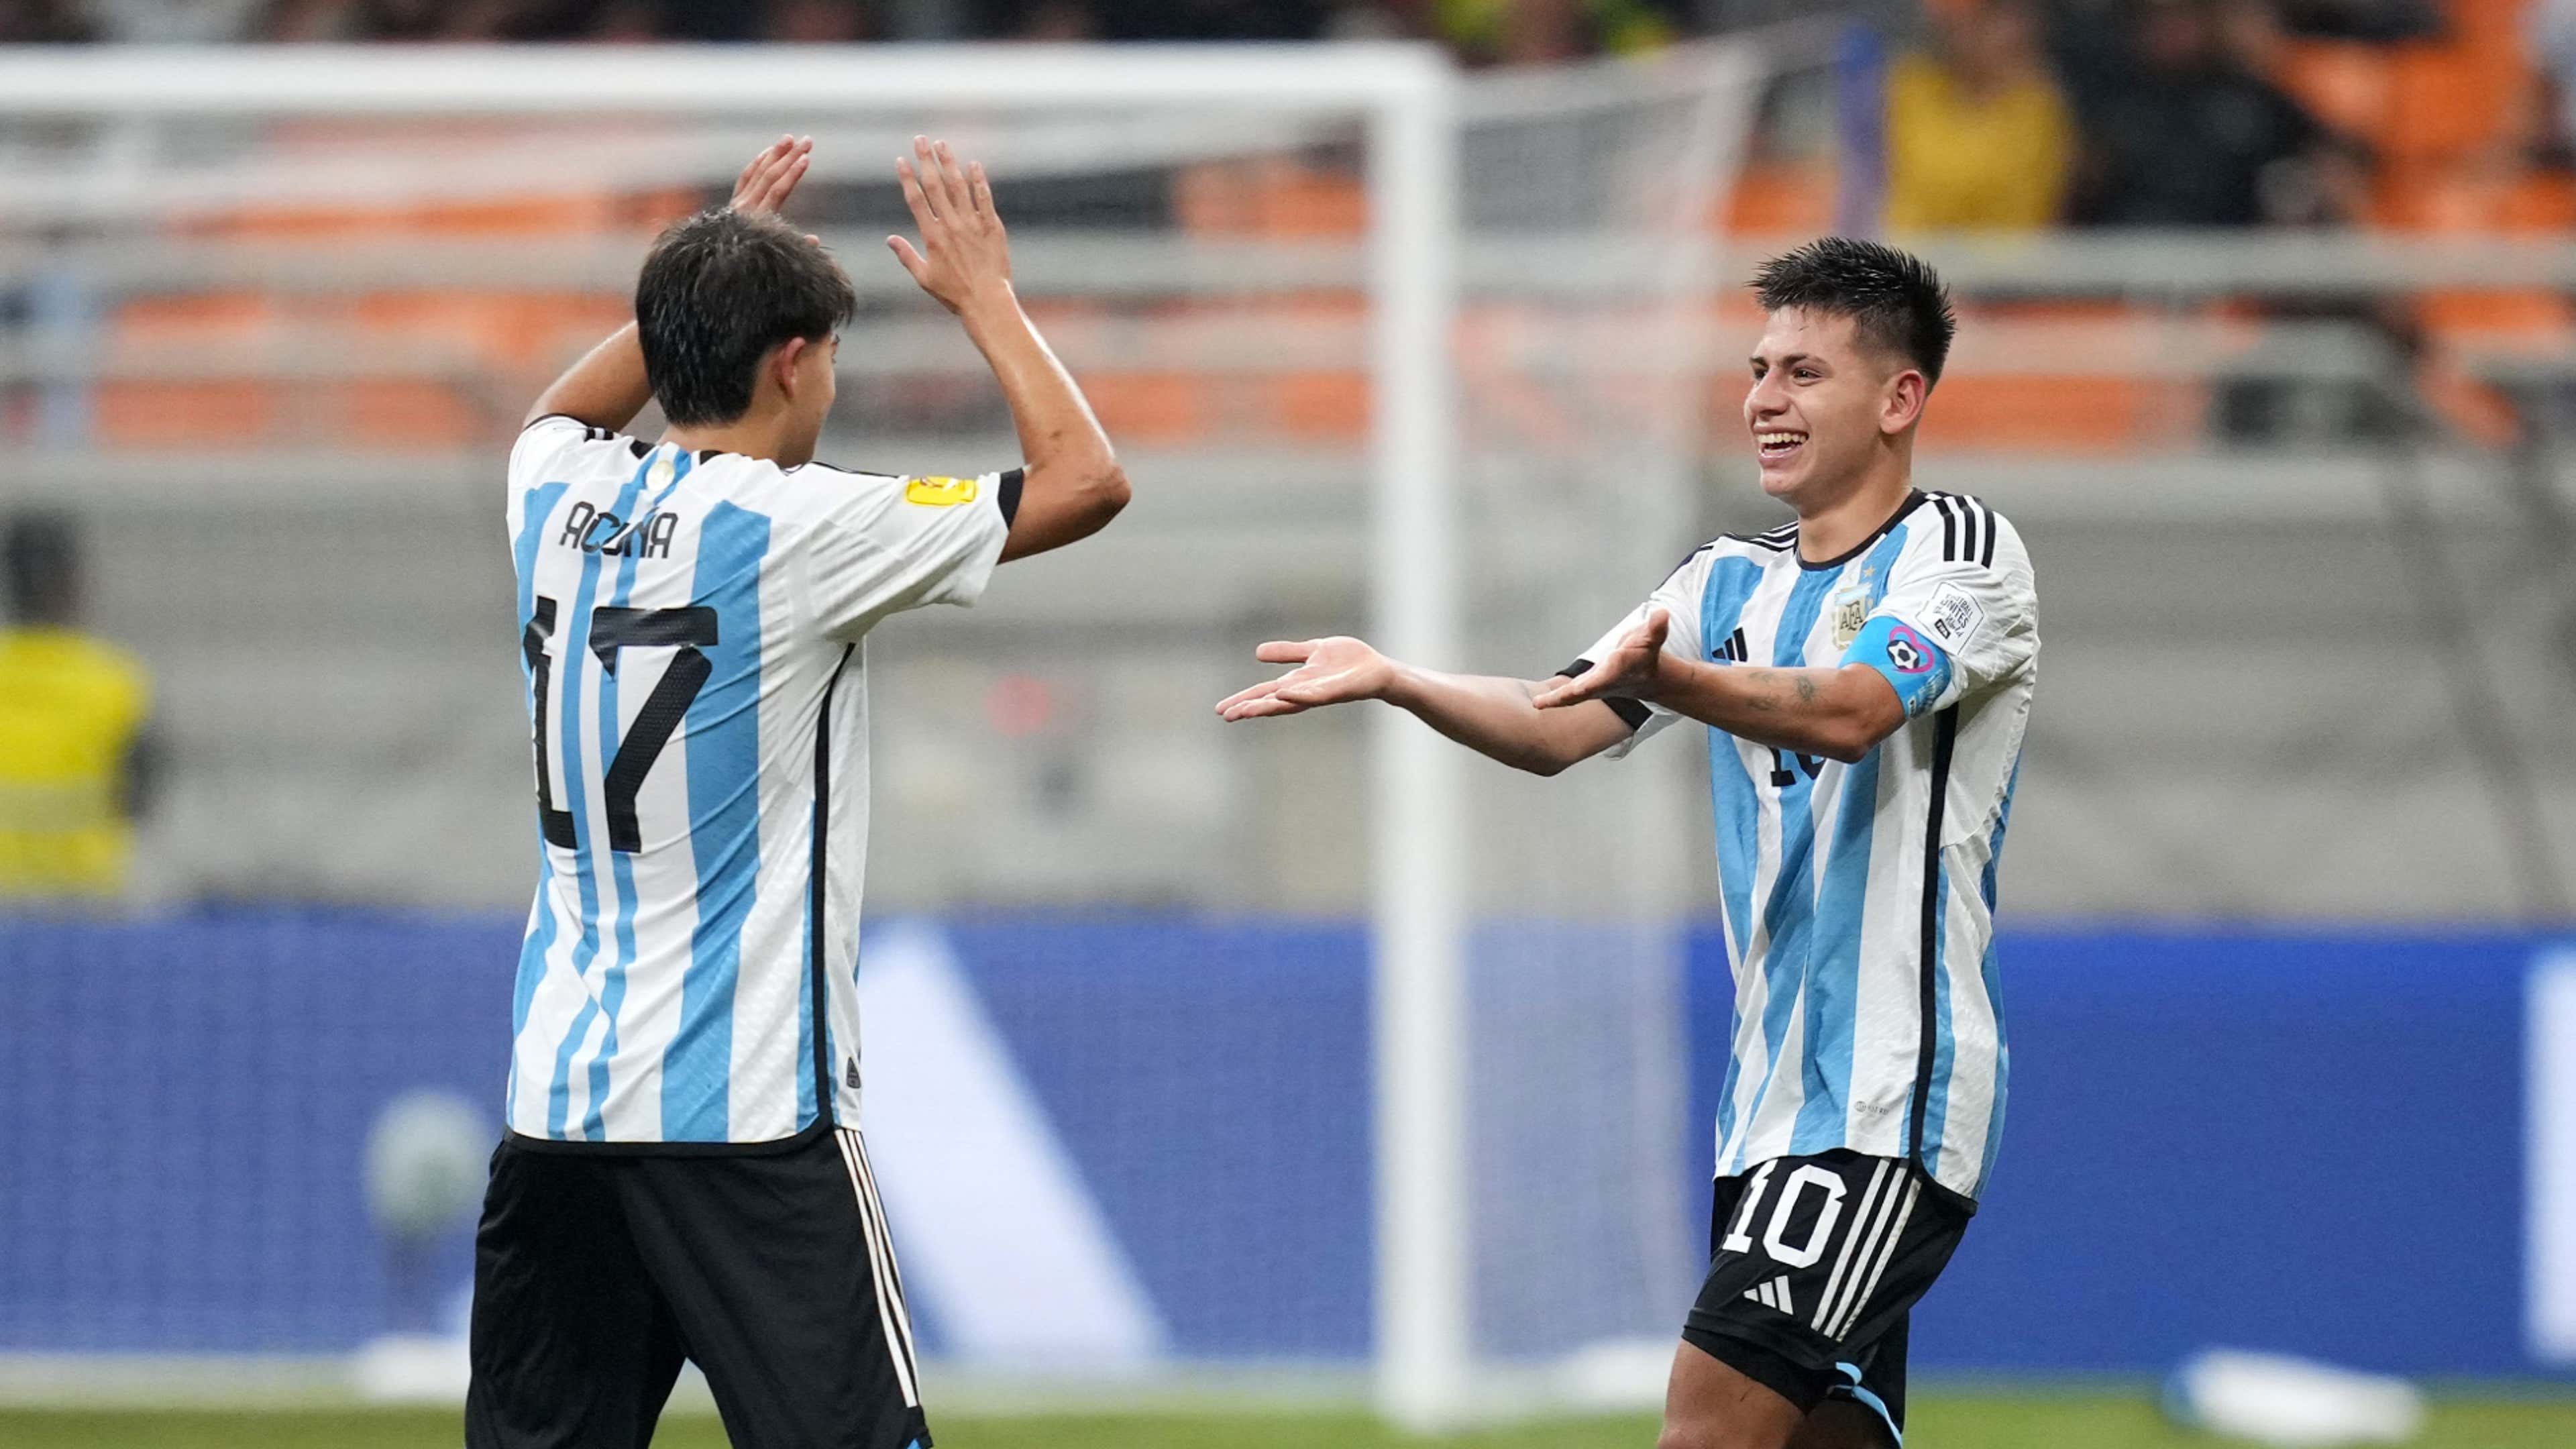 Mundial Sub-17: como assistir a Brasil x Argentina ao vivo na CazéTV